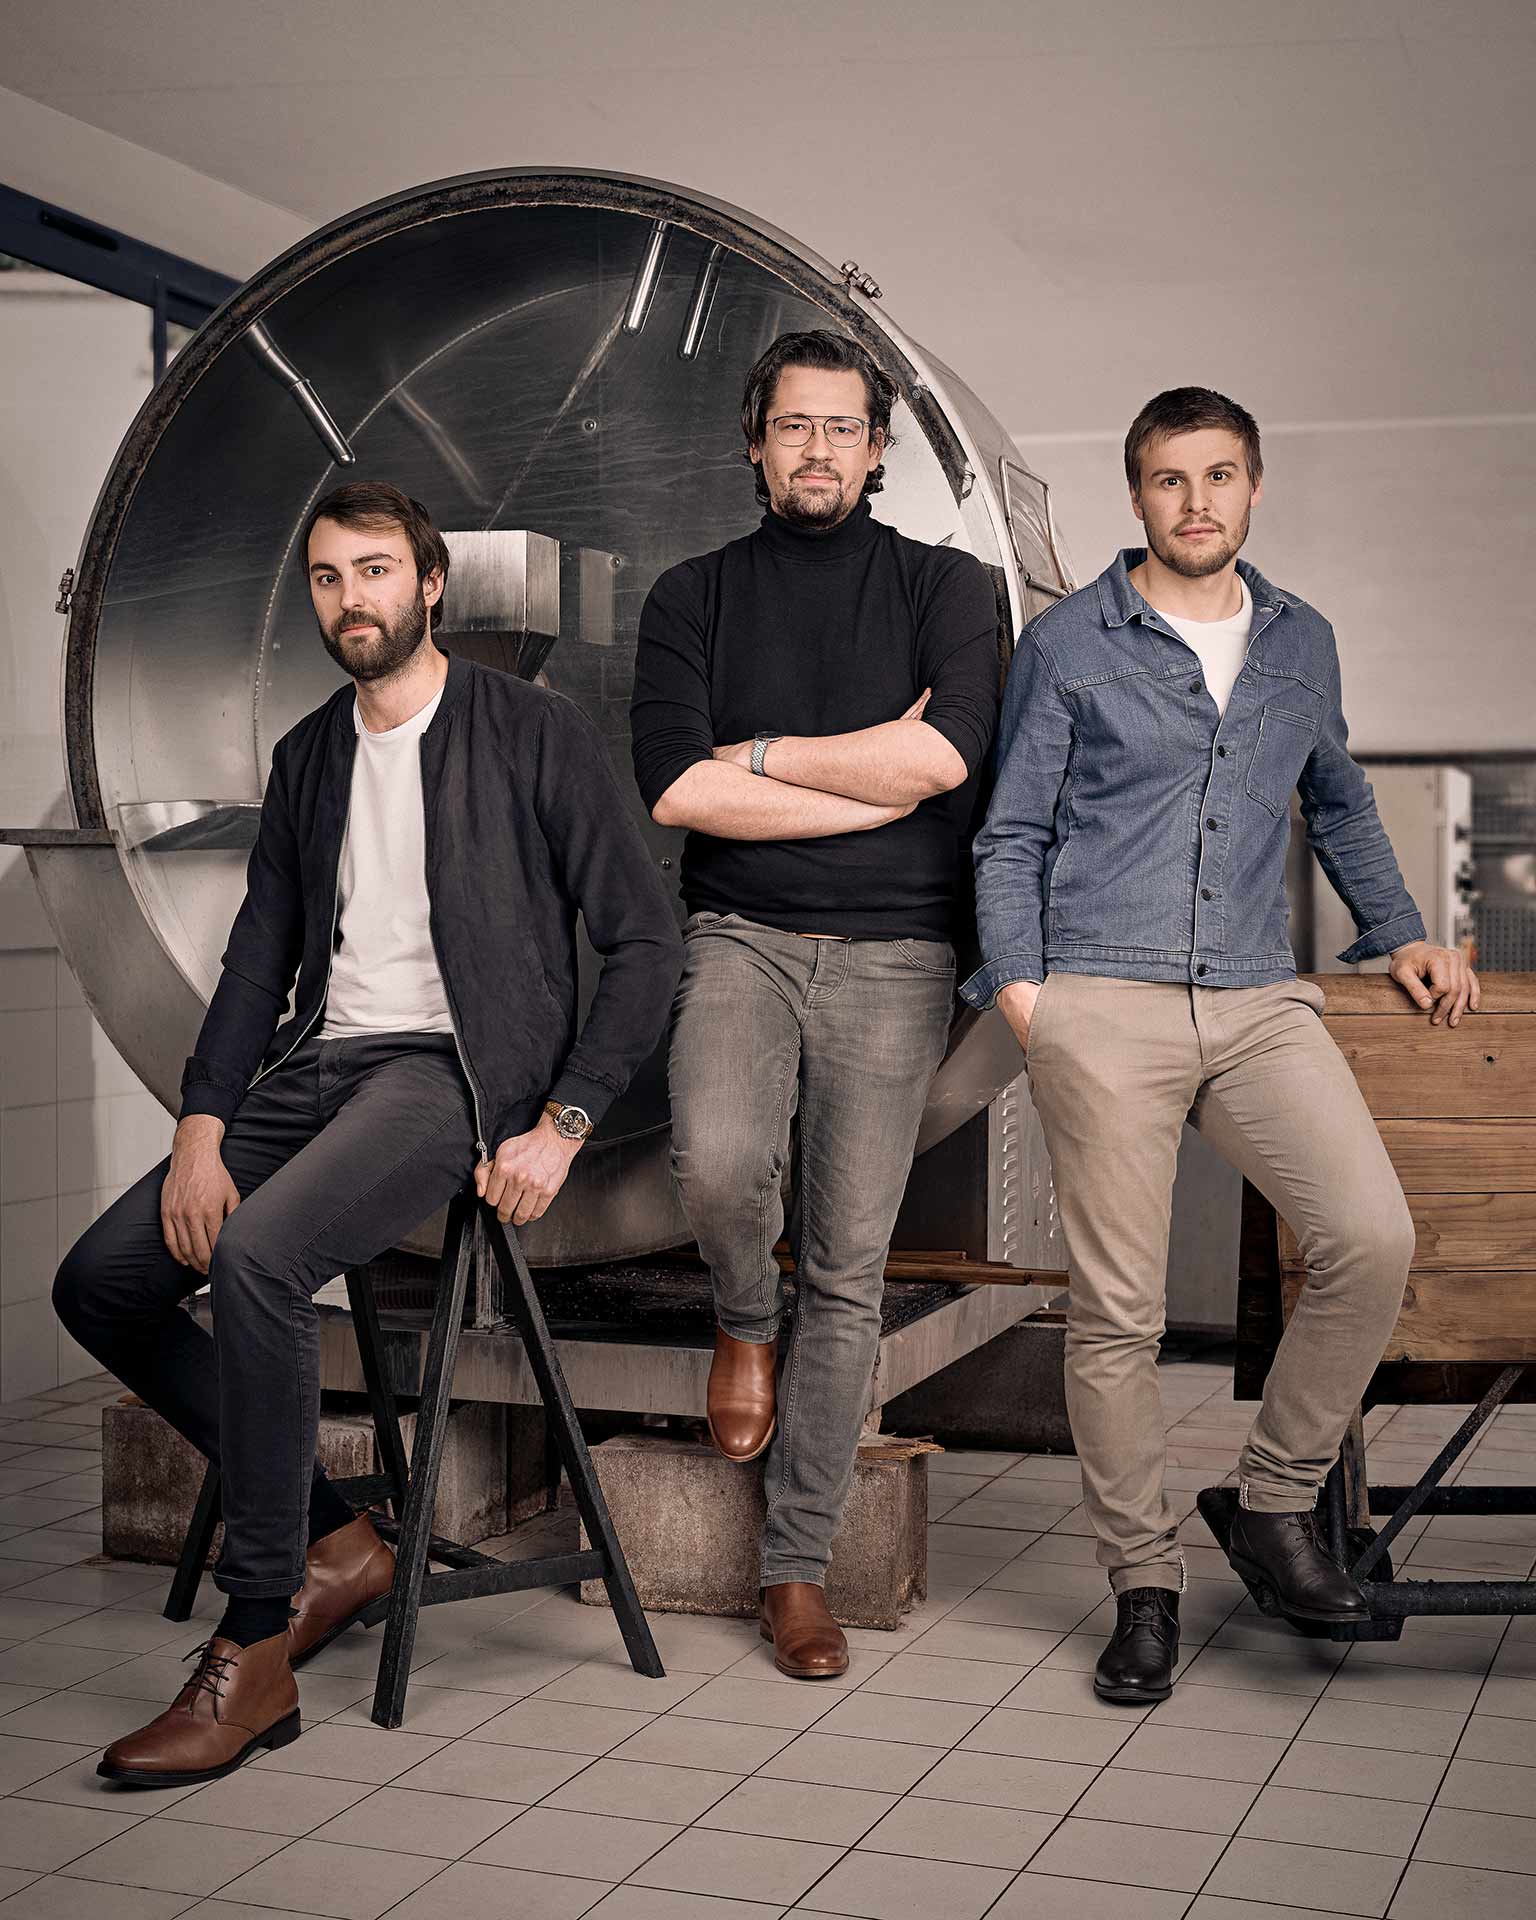 Les co-fondateurs d’Ictyos, tannerie de cuir marin installée à Saint-Fons (métropole de Lyon) : Emmanuel Fourault, Benjamin Malatrait, Gauthier Lefébure